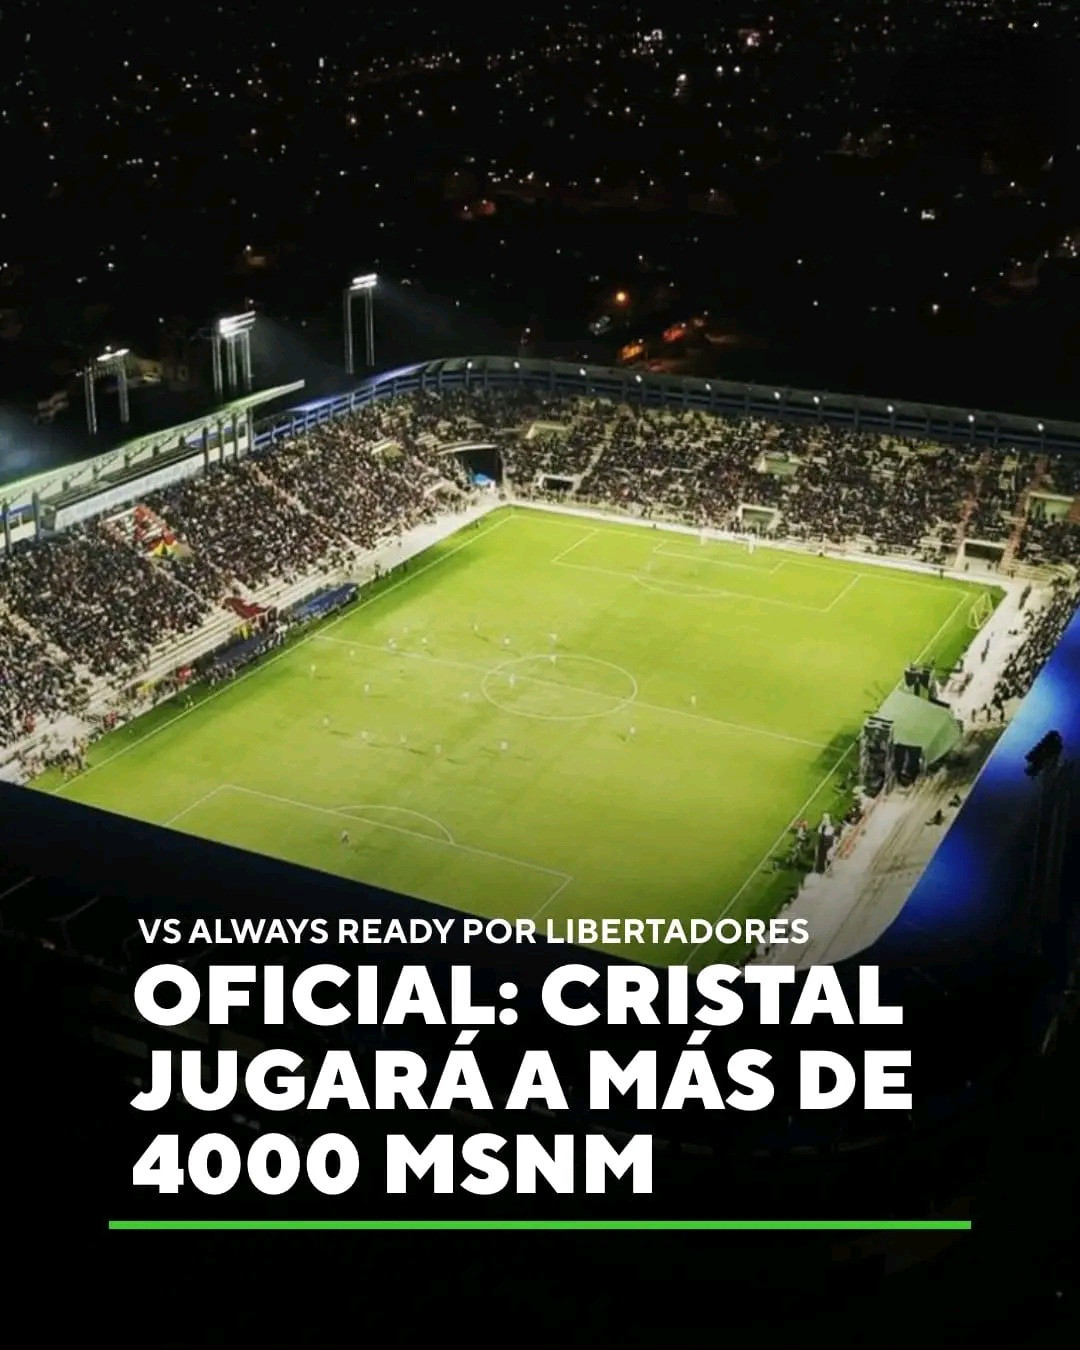 Sebuah stadion yang terletak pada ketinggian 4.000 meter telah disetujui di Bolivia.